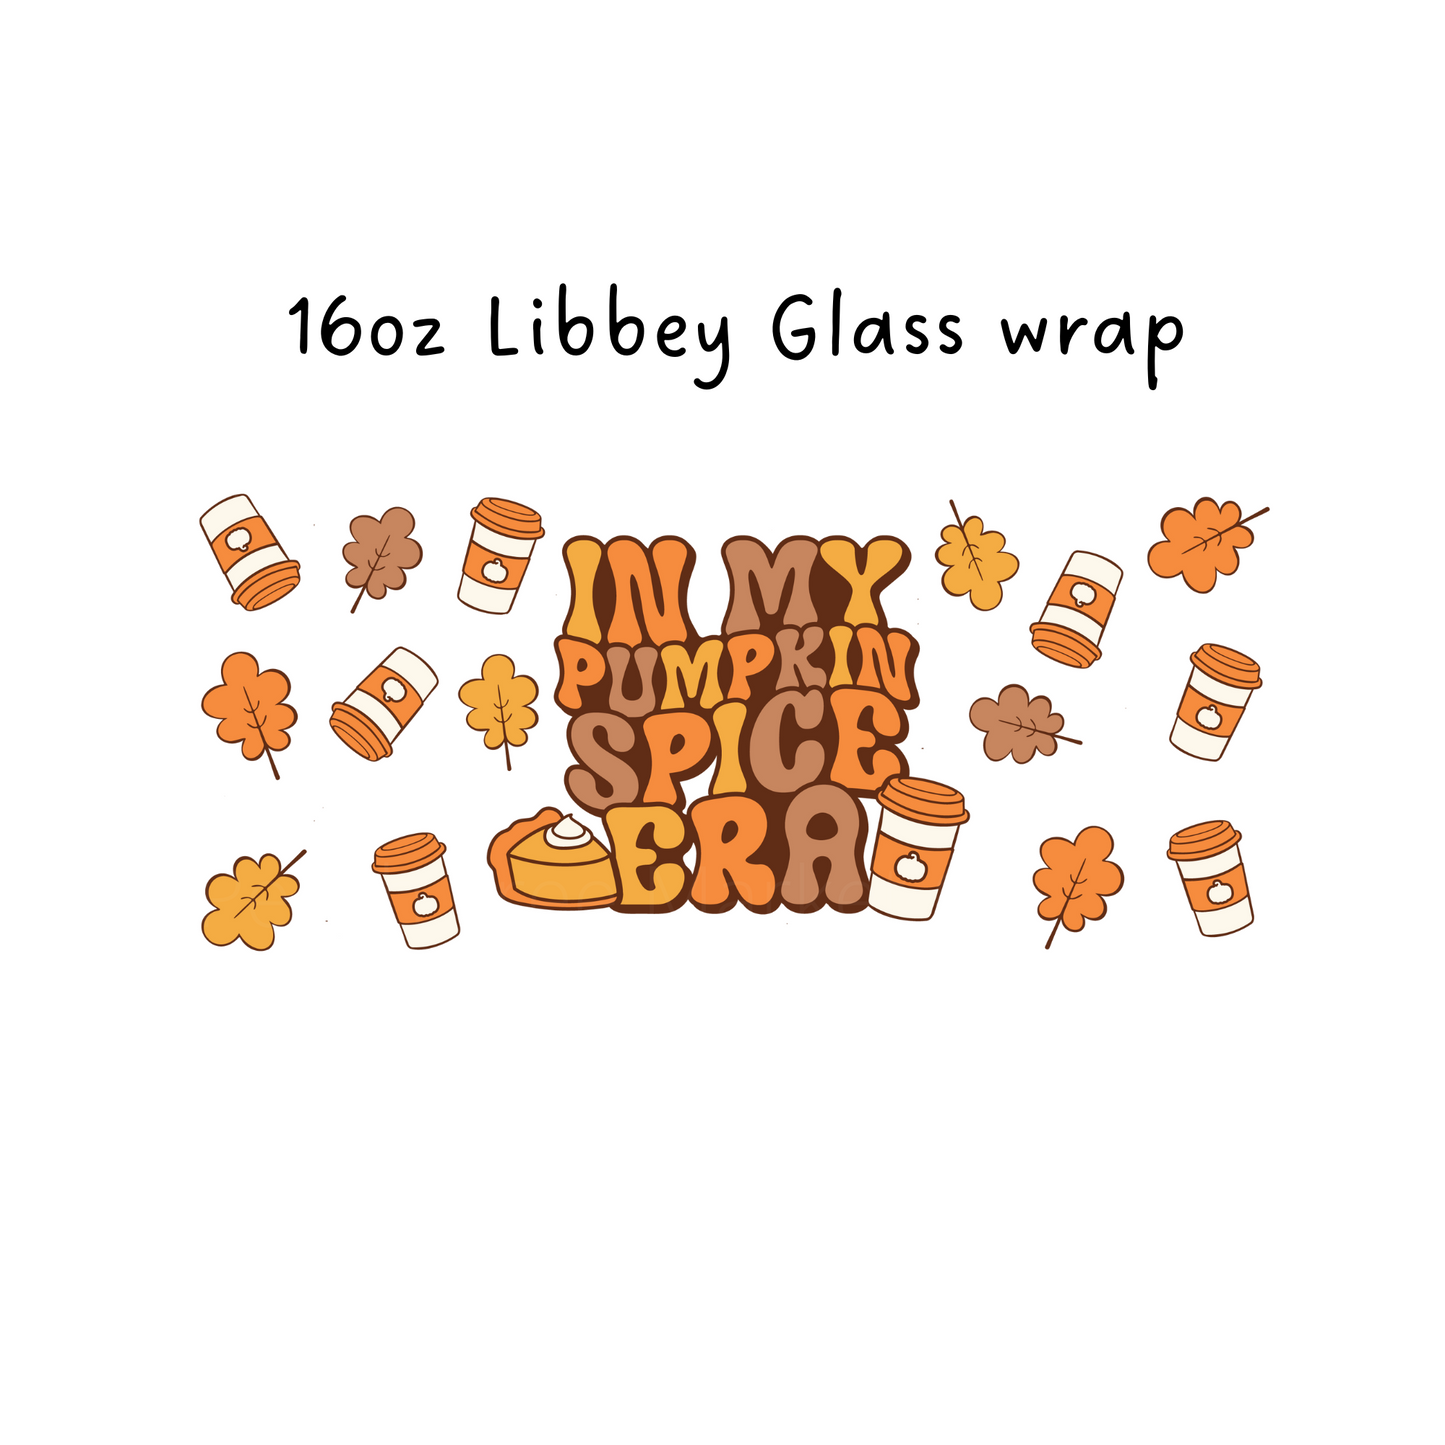 In My Pumpkin spice Era 16 Oz Libbey Beer Glass Wrap